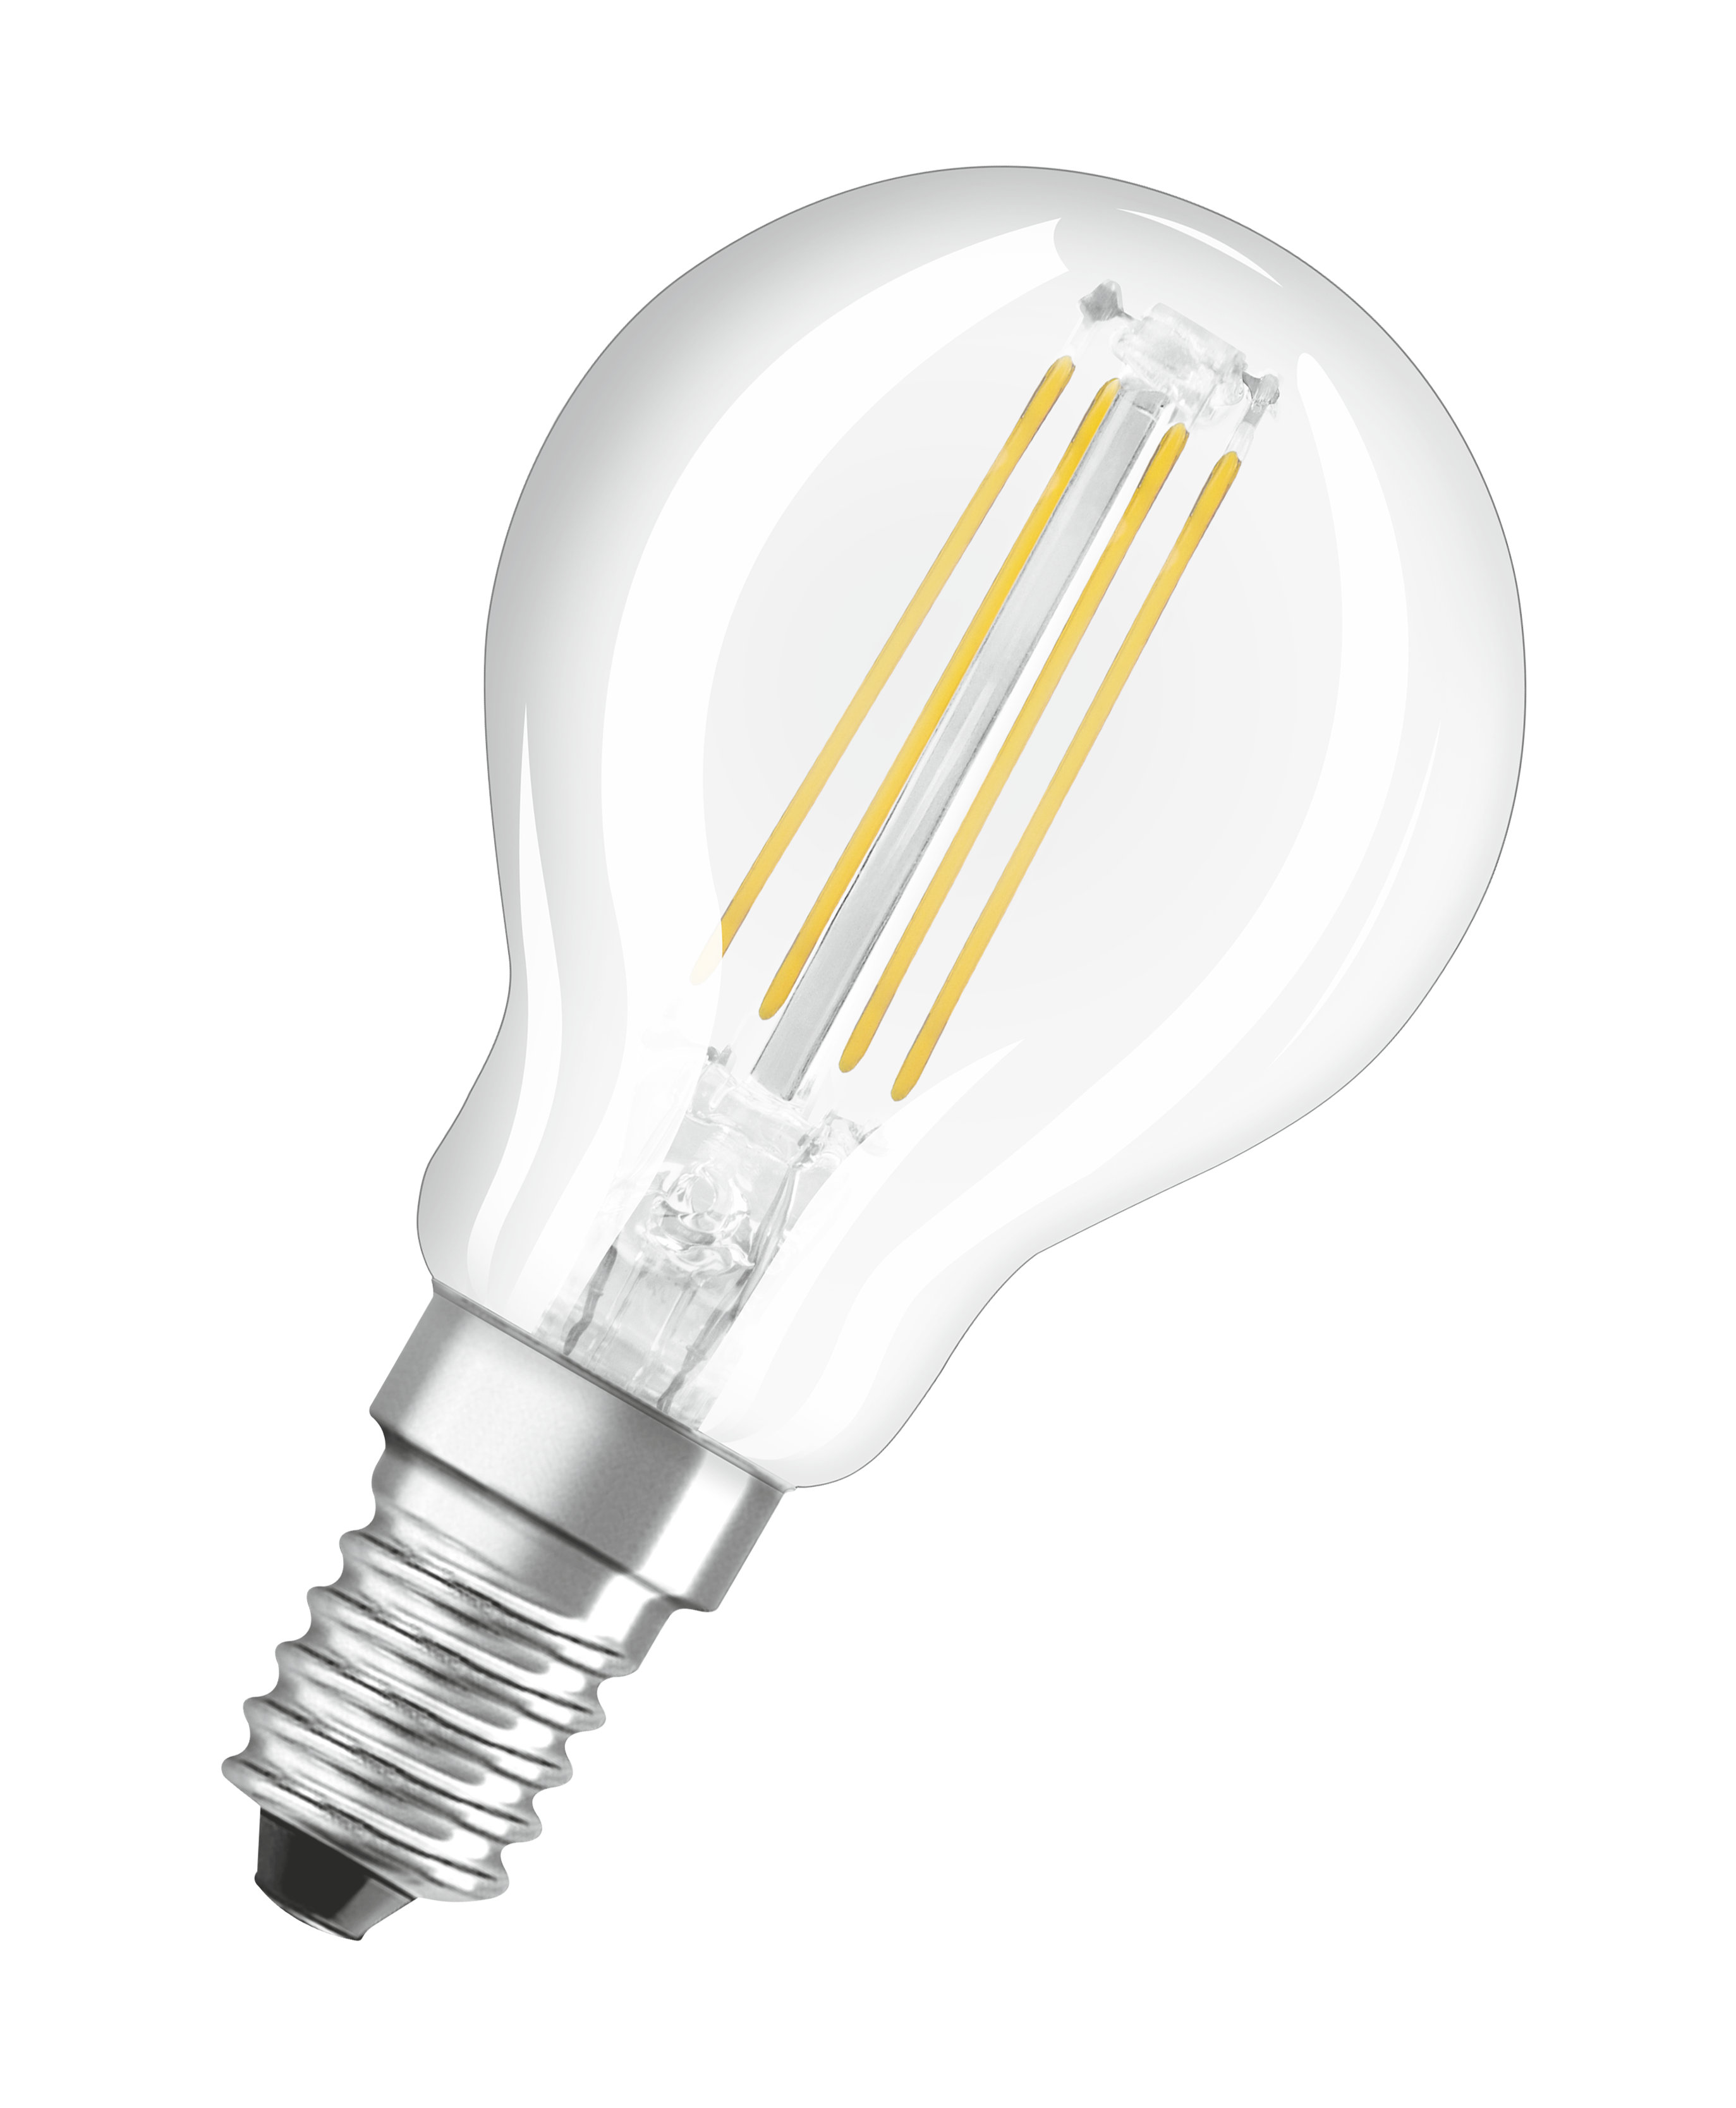 P Lampe CLASSIC Retrofit OSRAM  LED 470 LED Lumen Kaltweiß DIM